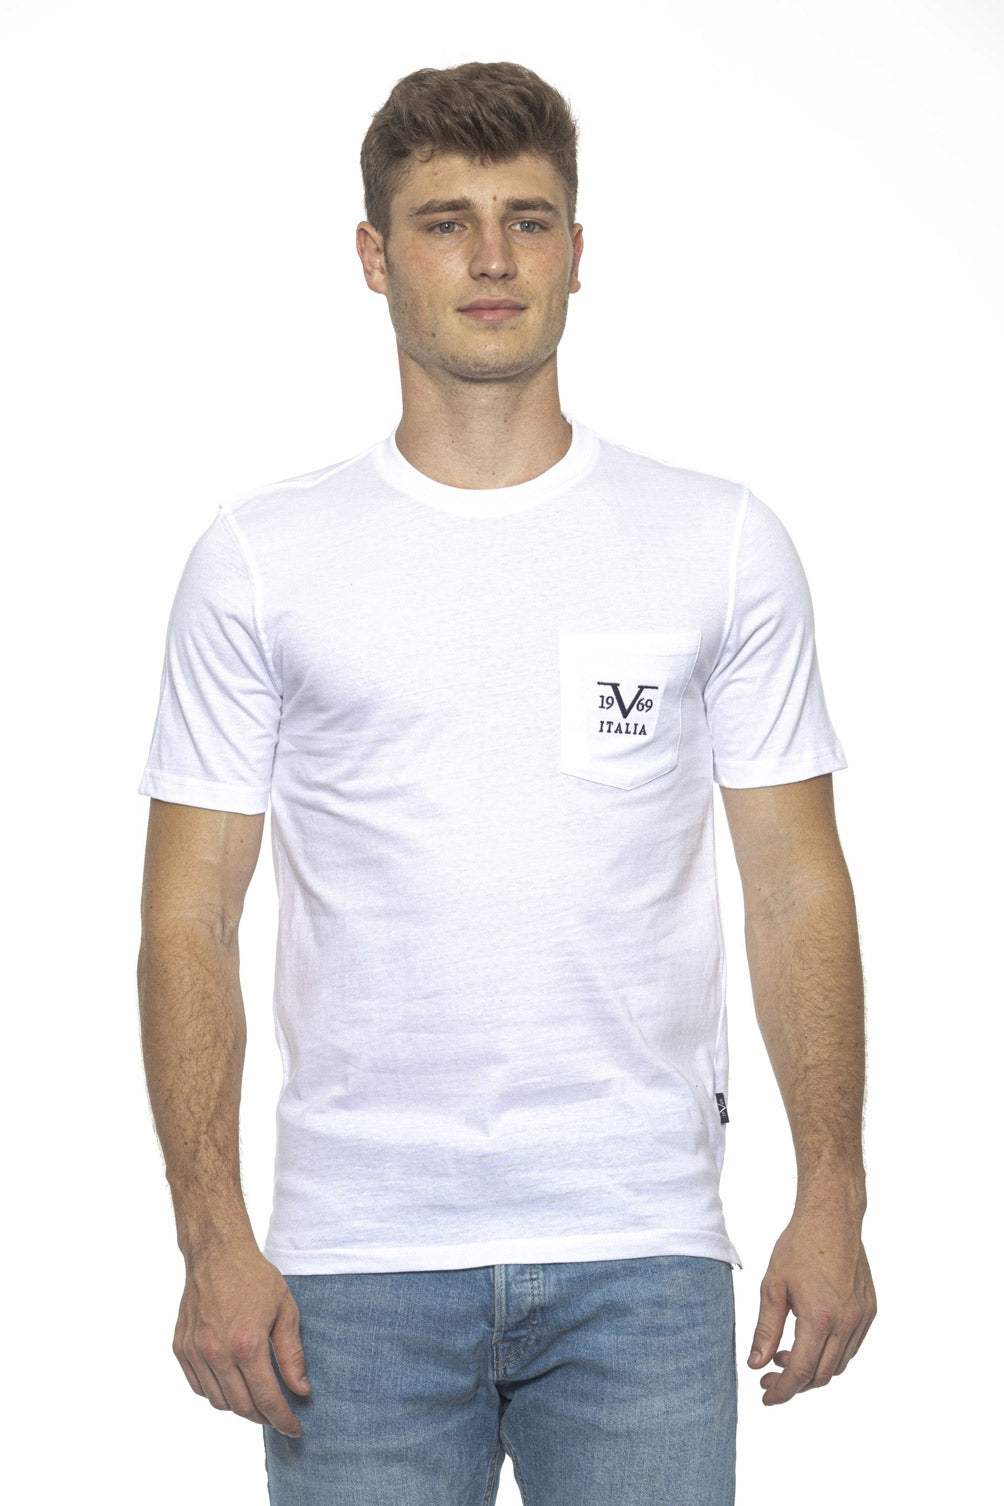 19V69 Italia Mens T-Shirt White IVAN WHITE